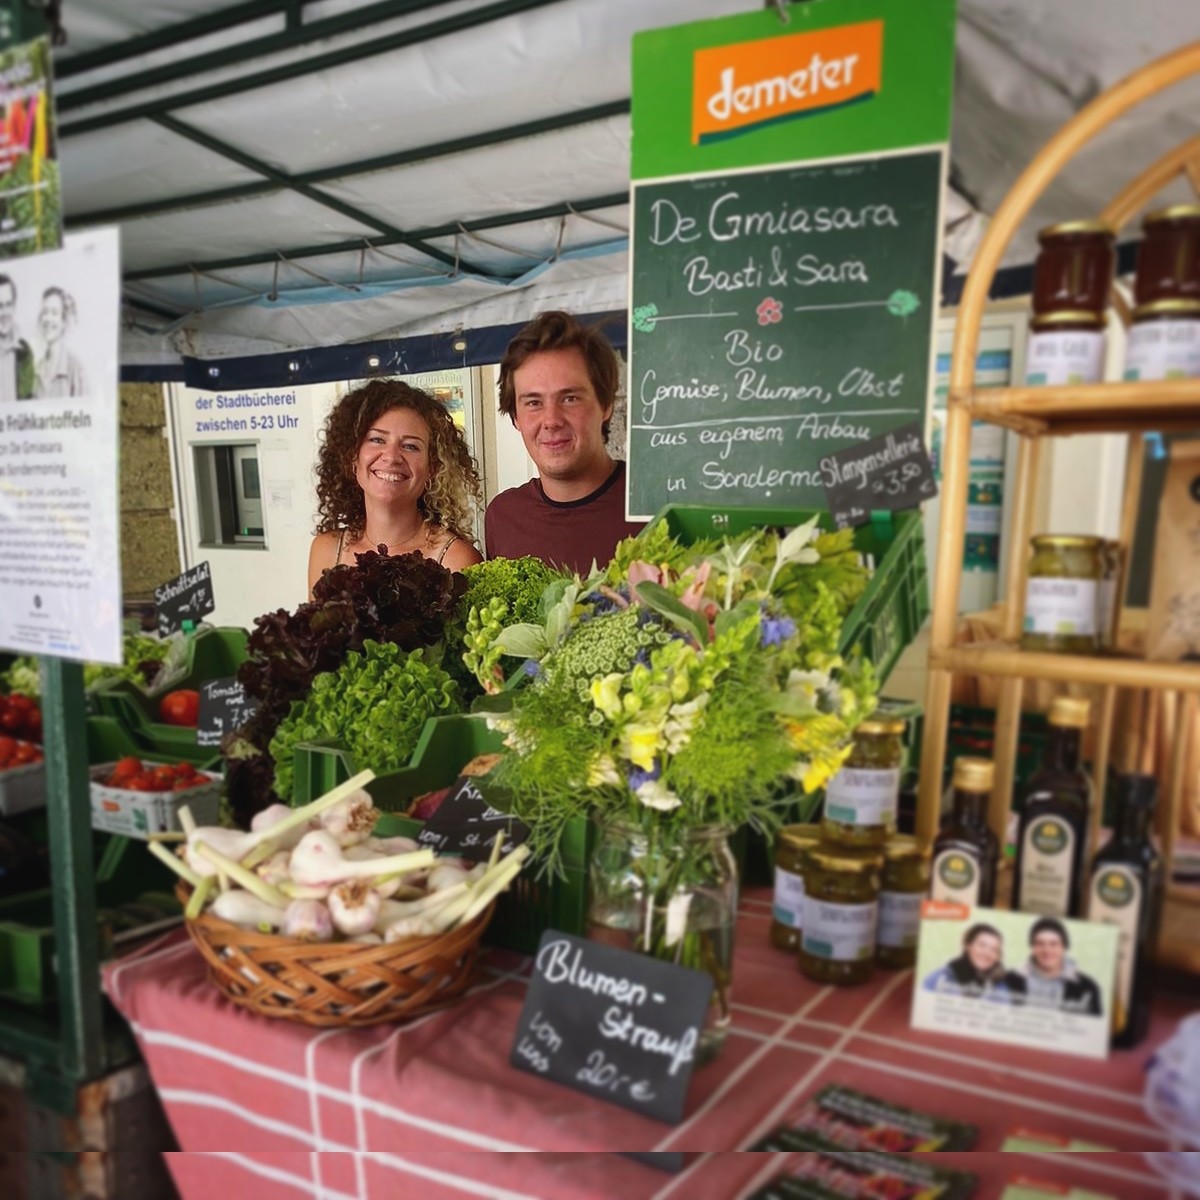 Besichtigung des Bio-Gemüsebaubetriebs der "De Gmiasara“, Sebastian Rieder und Sara Müllner.